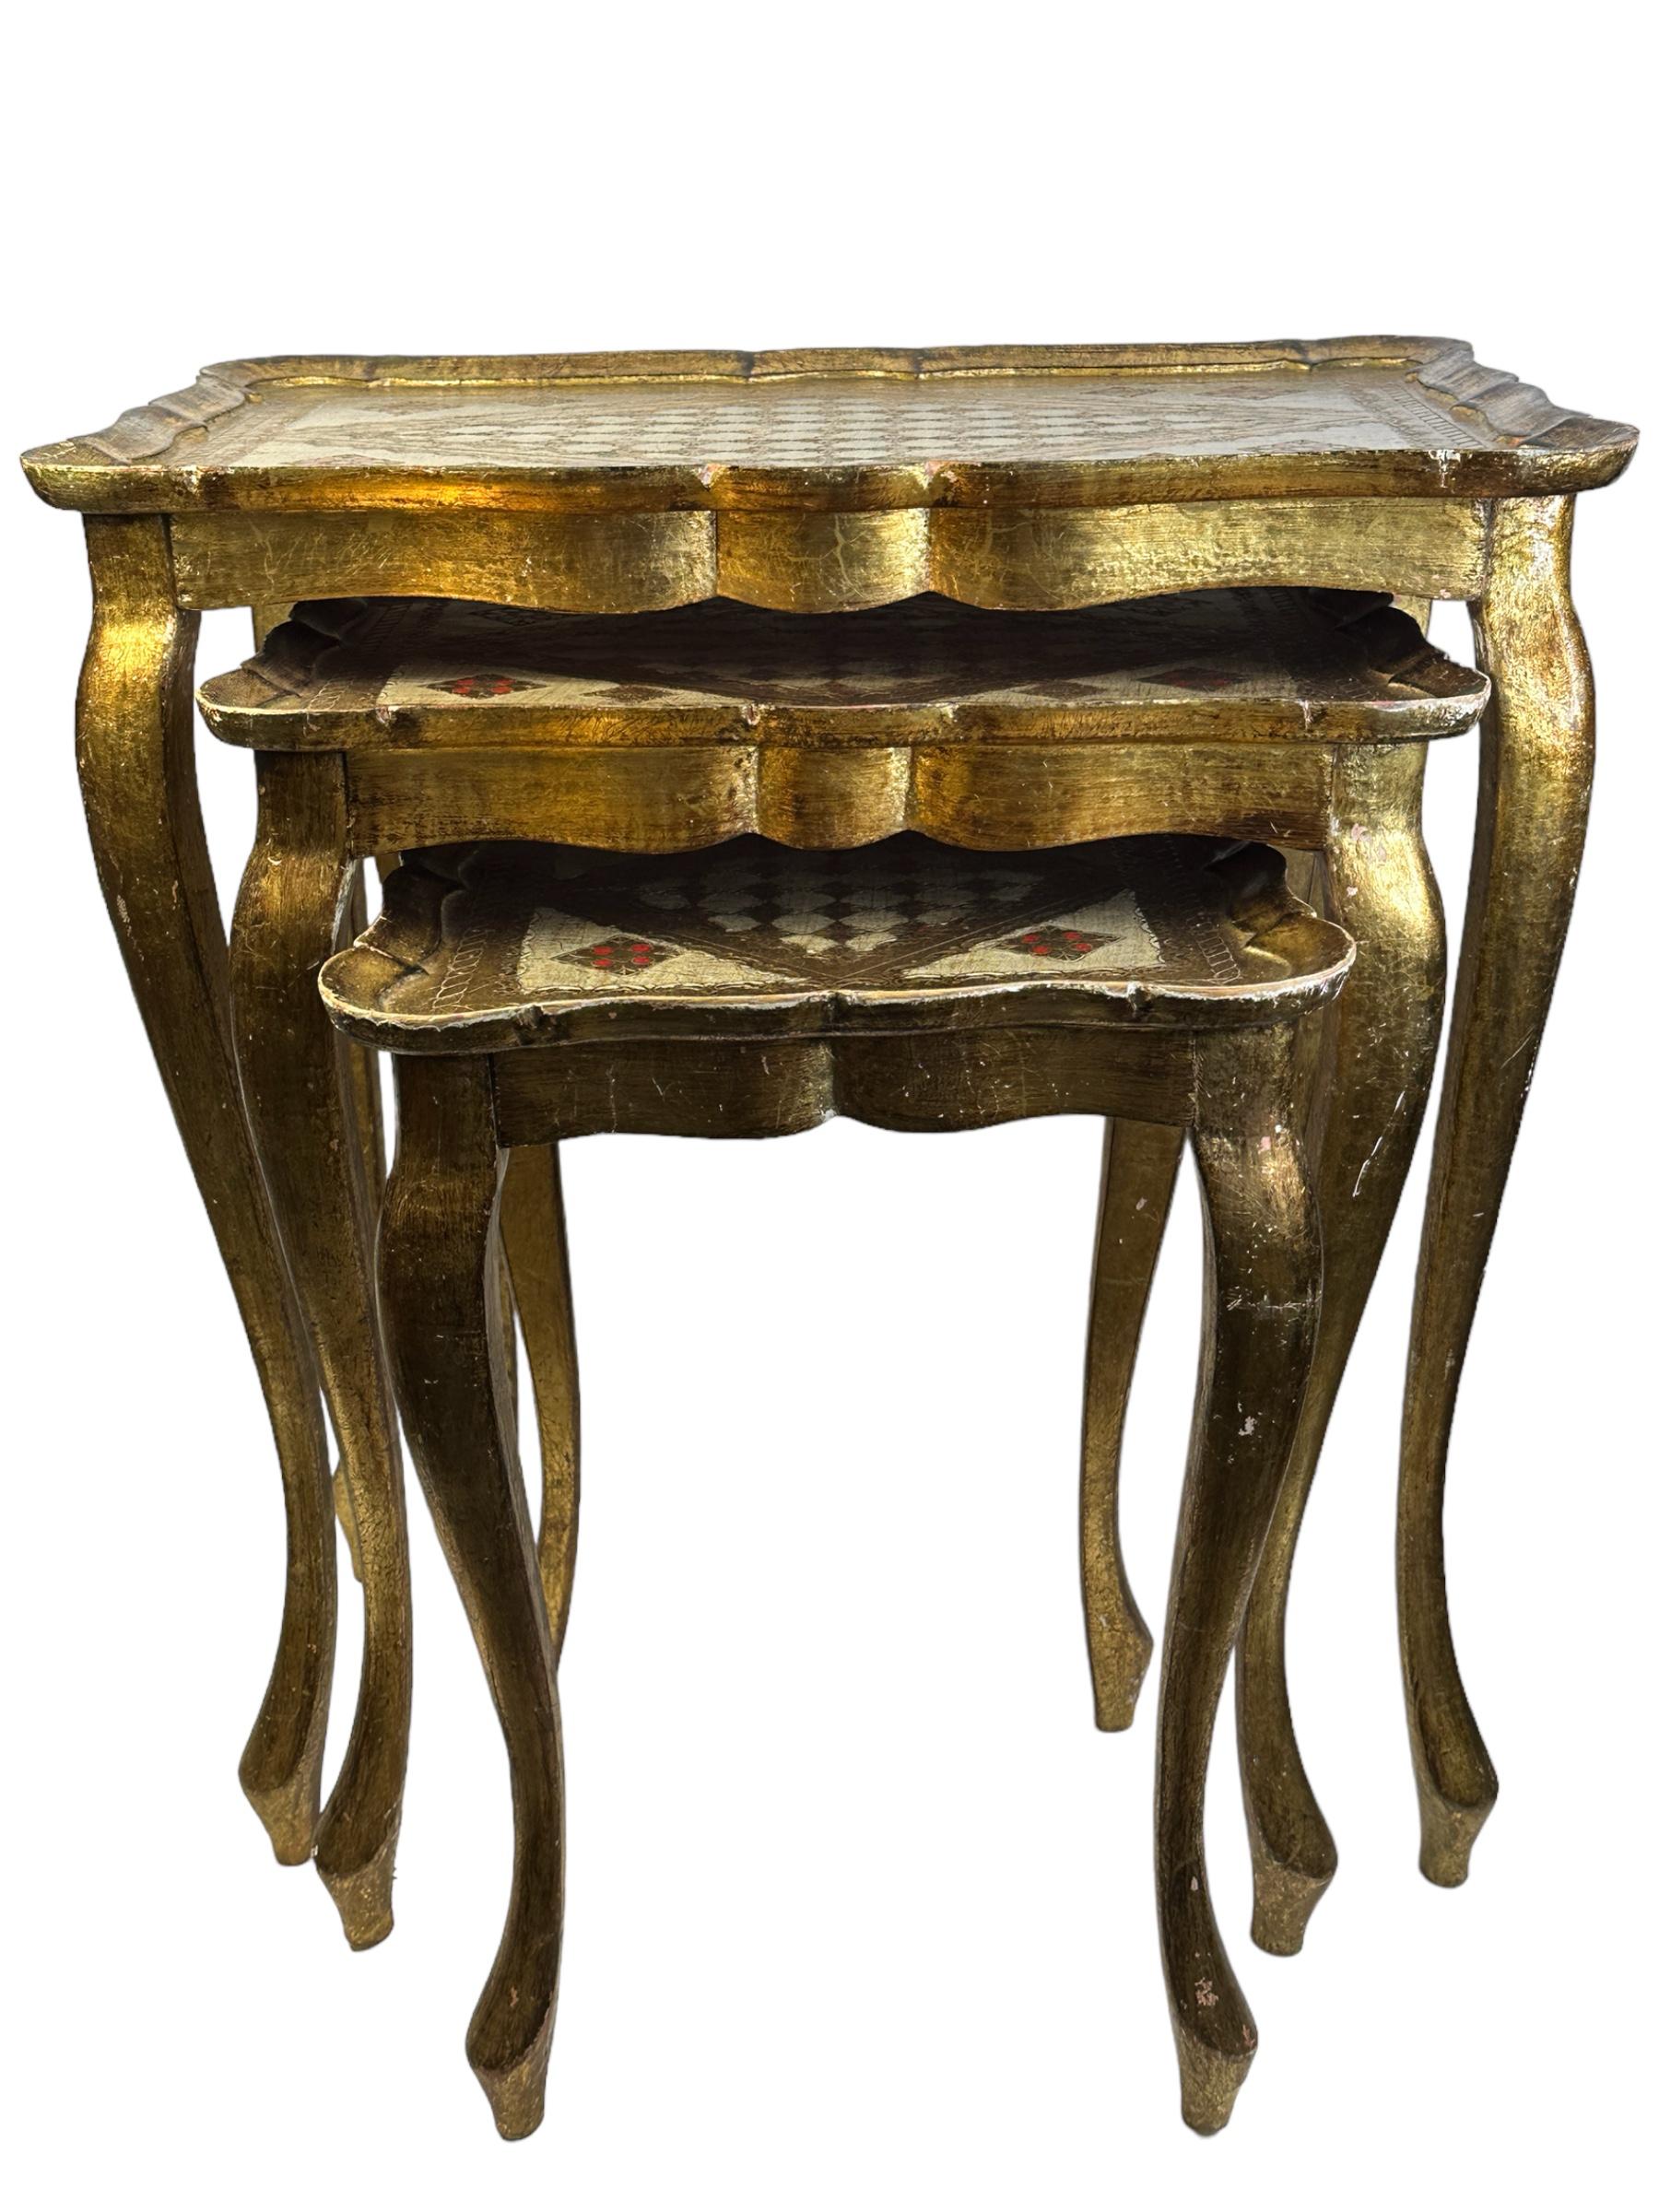 Cet ensemble de trois tables gigognes de style Florentine a été fabriqué en Italie, vers 1960. Ils se caractérisent par des pieds en cabriole et des détails complexes peints à la main sur les plateaux de table aux bords festonnés. Le bois doré